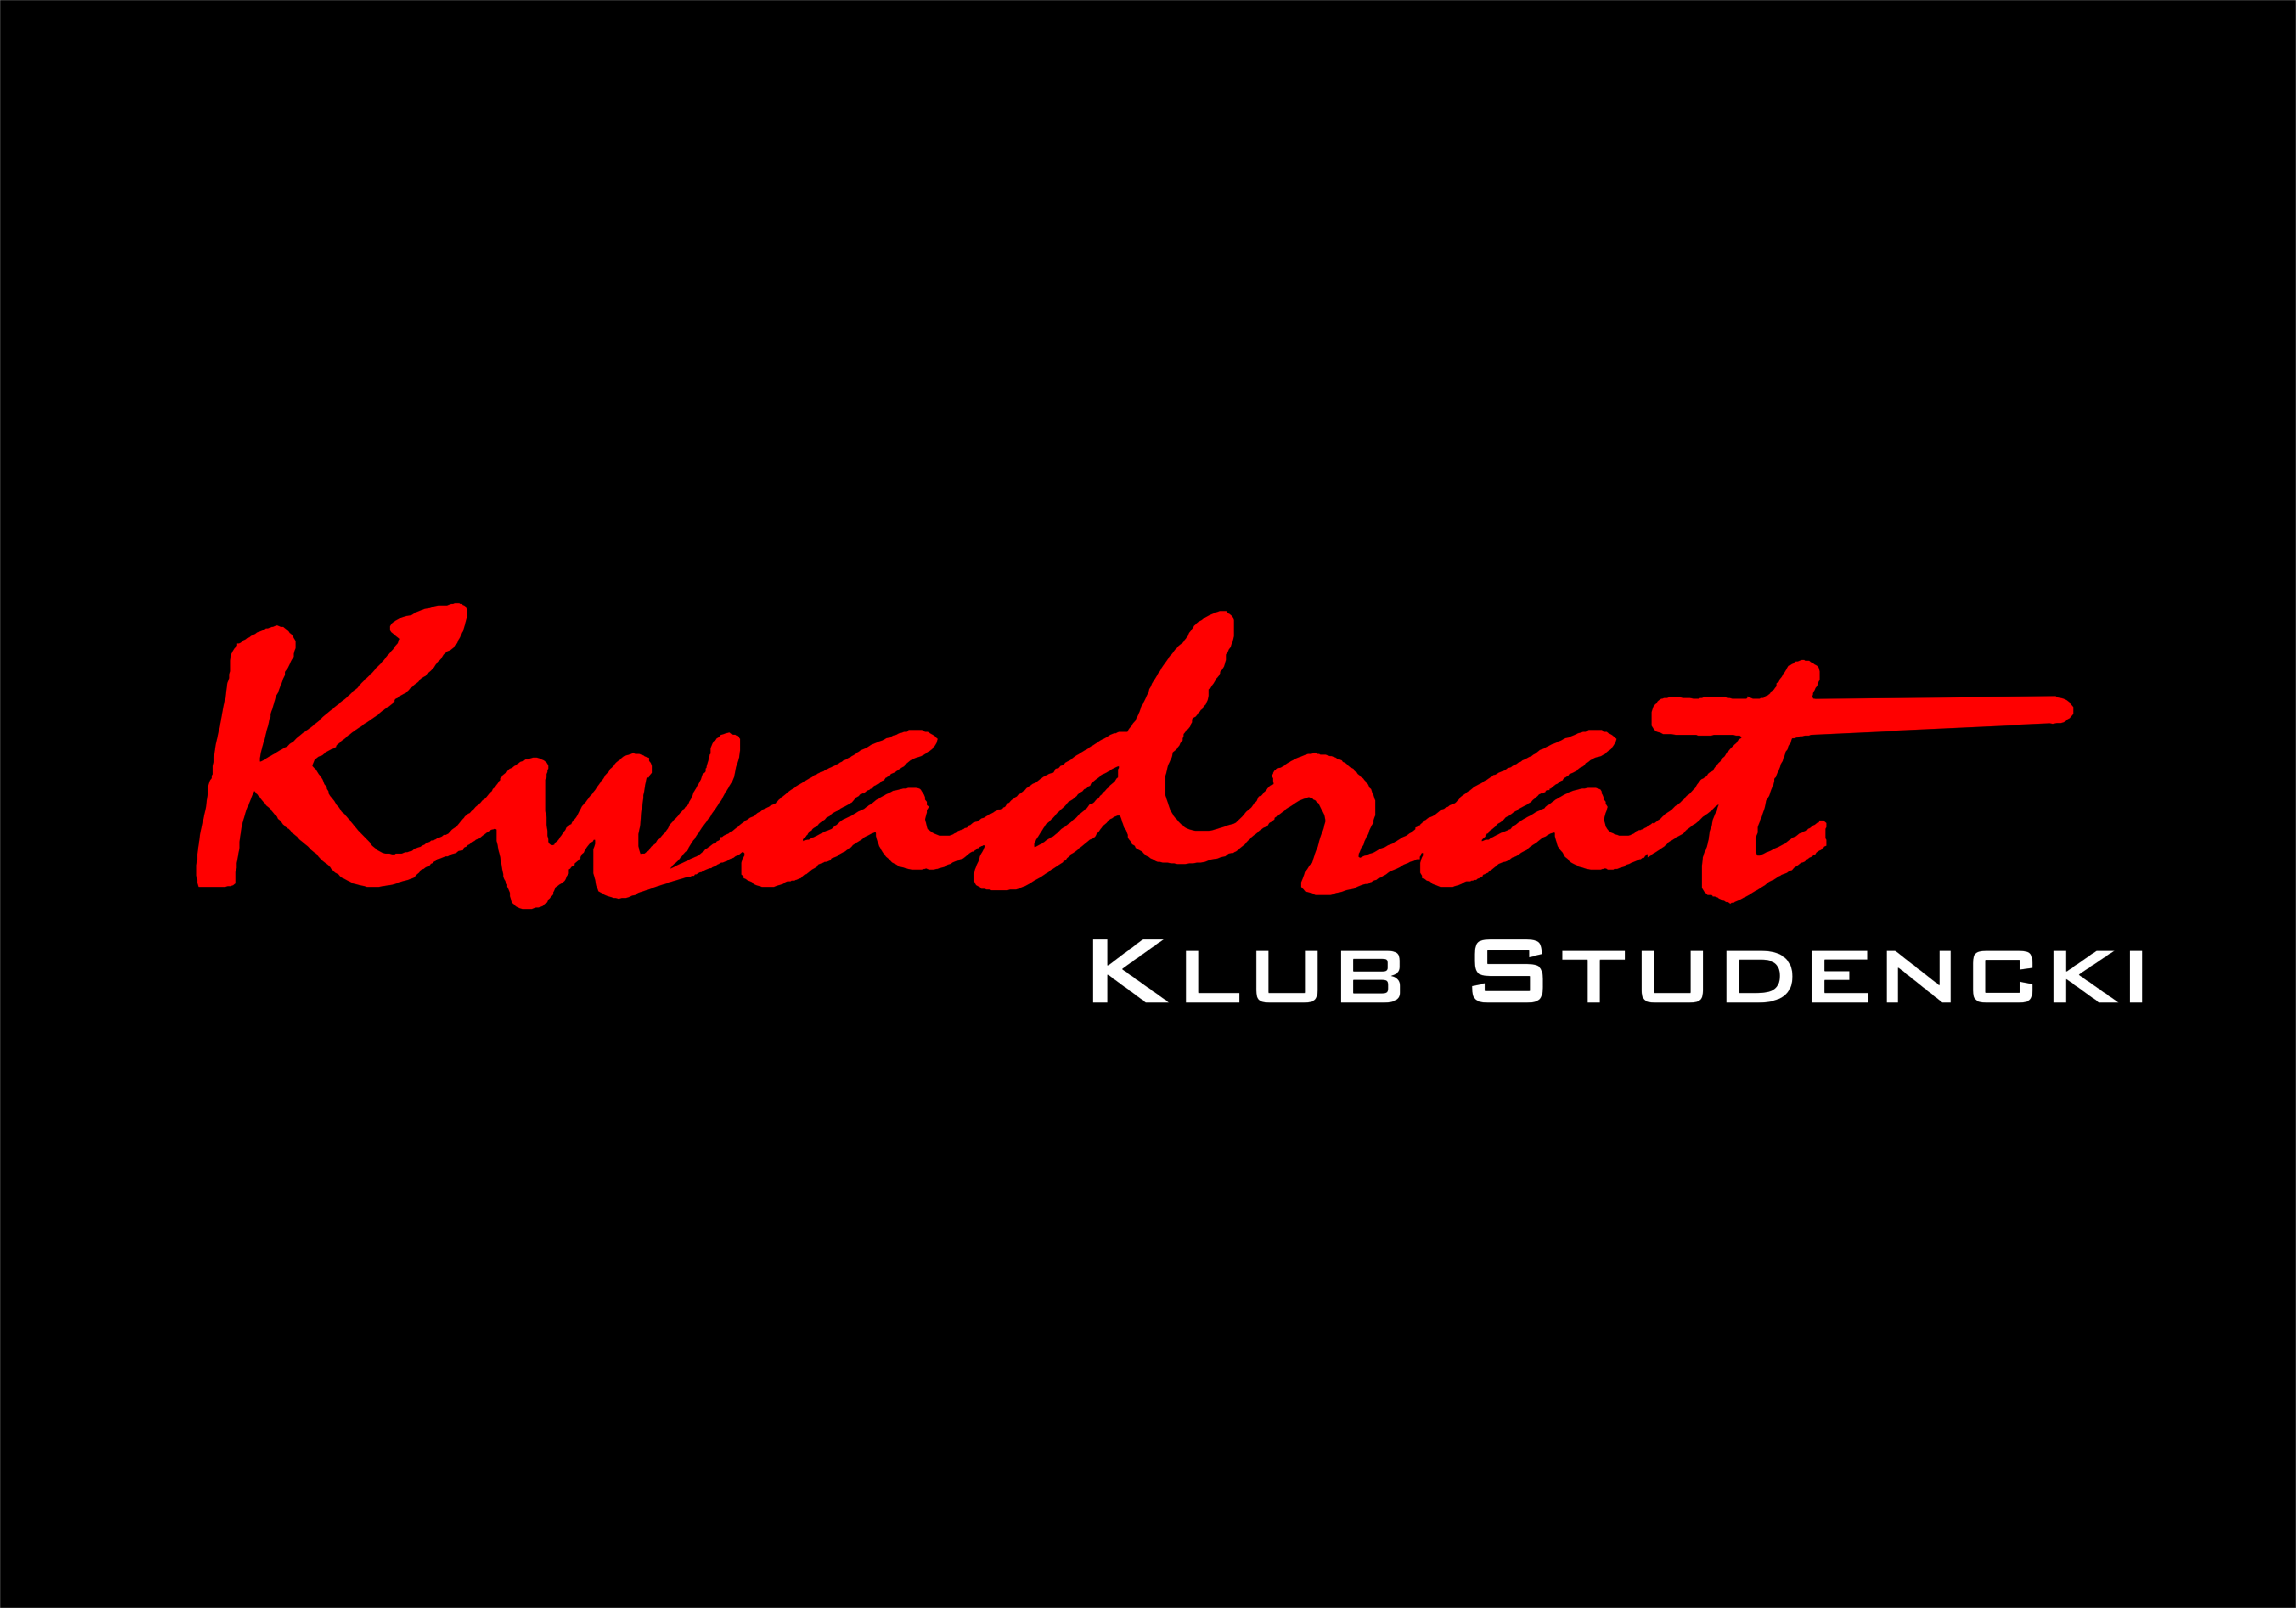 Logotyp - Klub Kwadrat